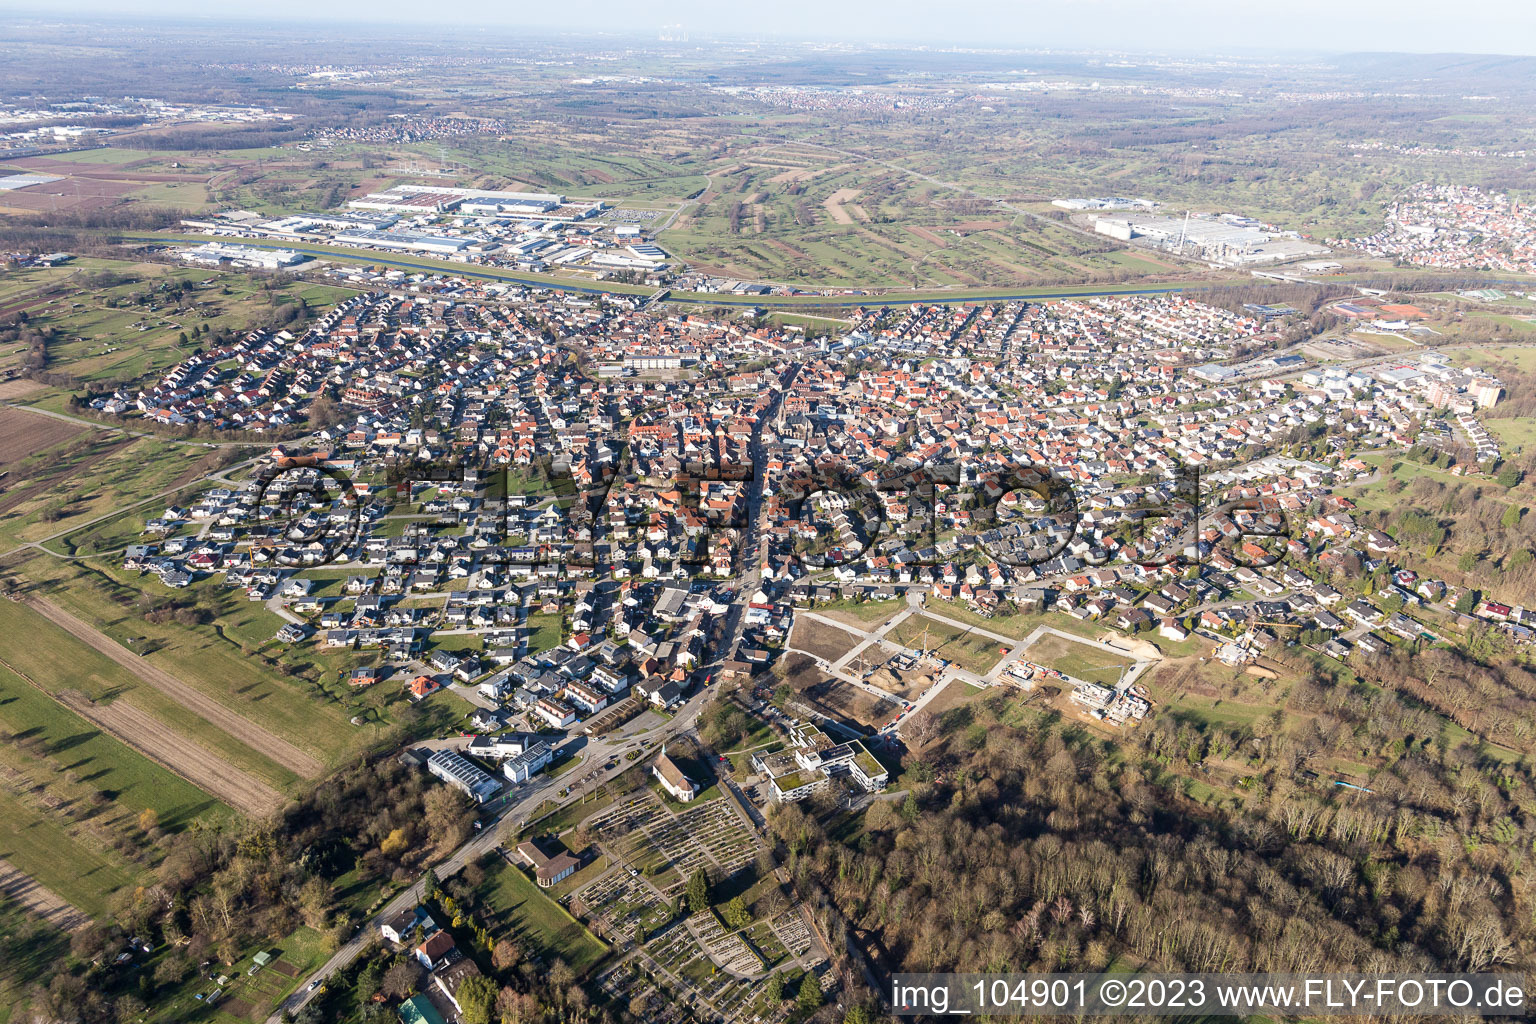 Kuppenheim im Bundesland Baden-Württemberg, Deutschland von der Drohne aus gesehen